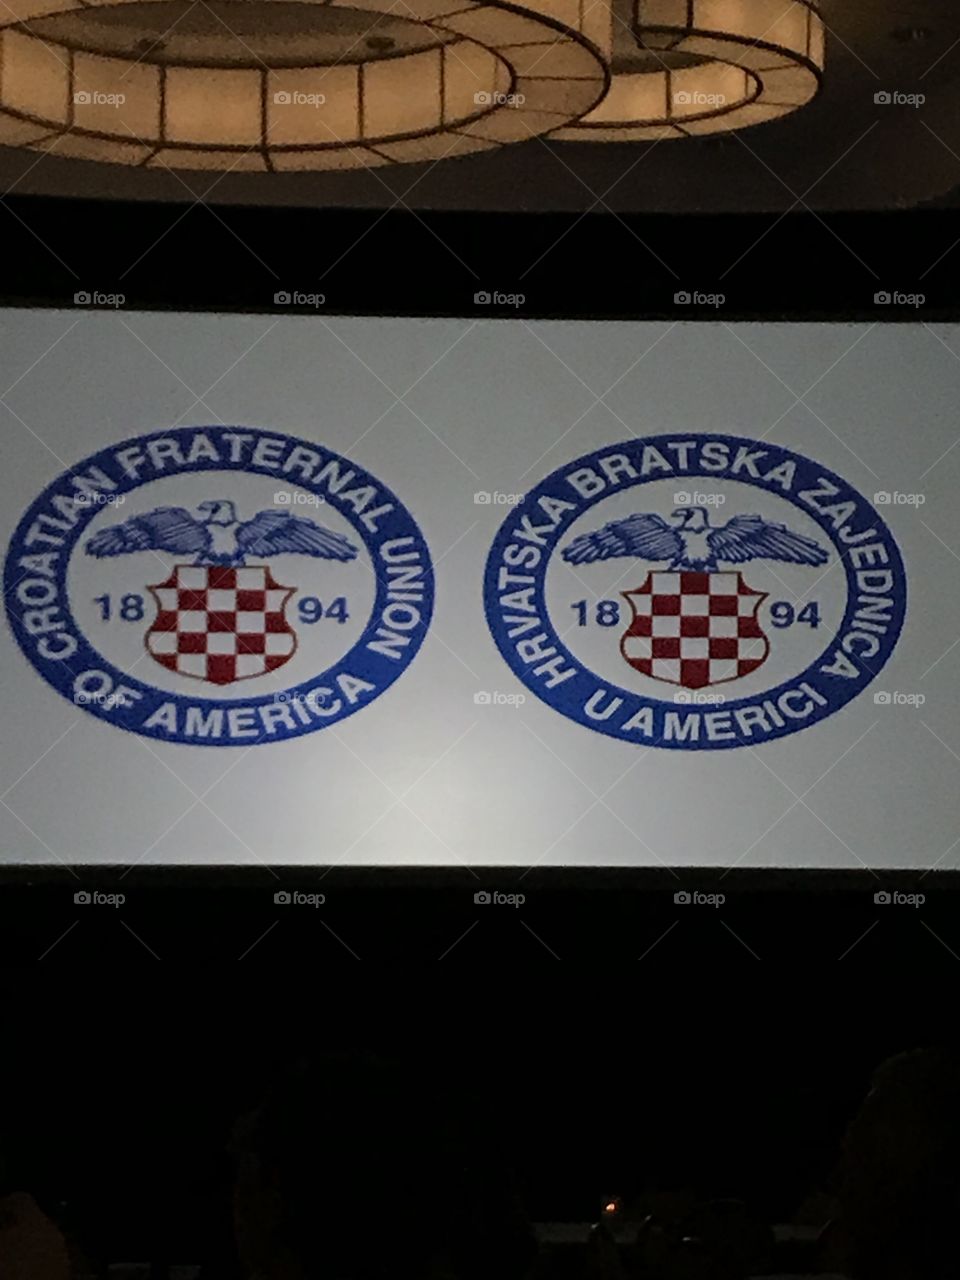 Croatian fraternal union 